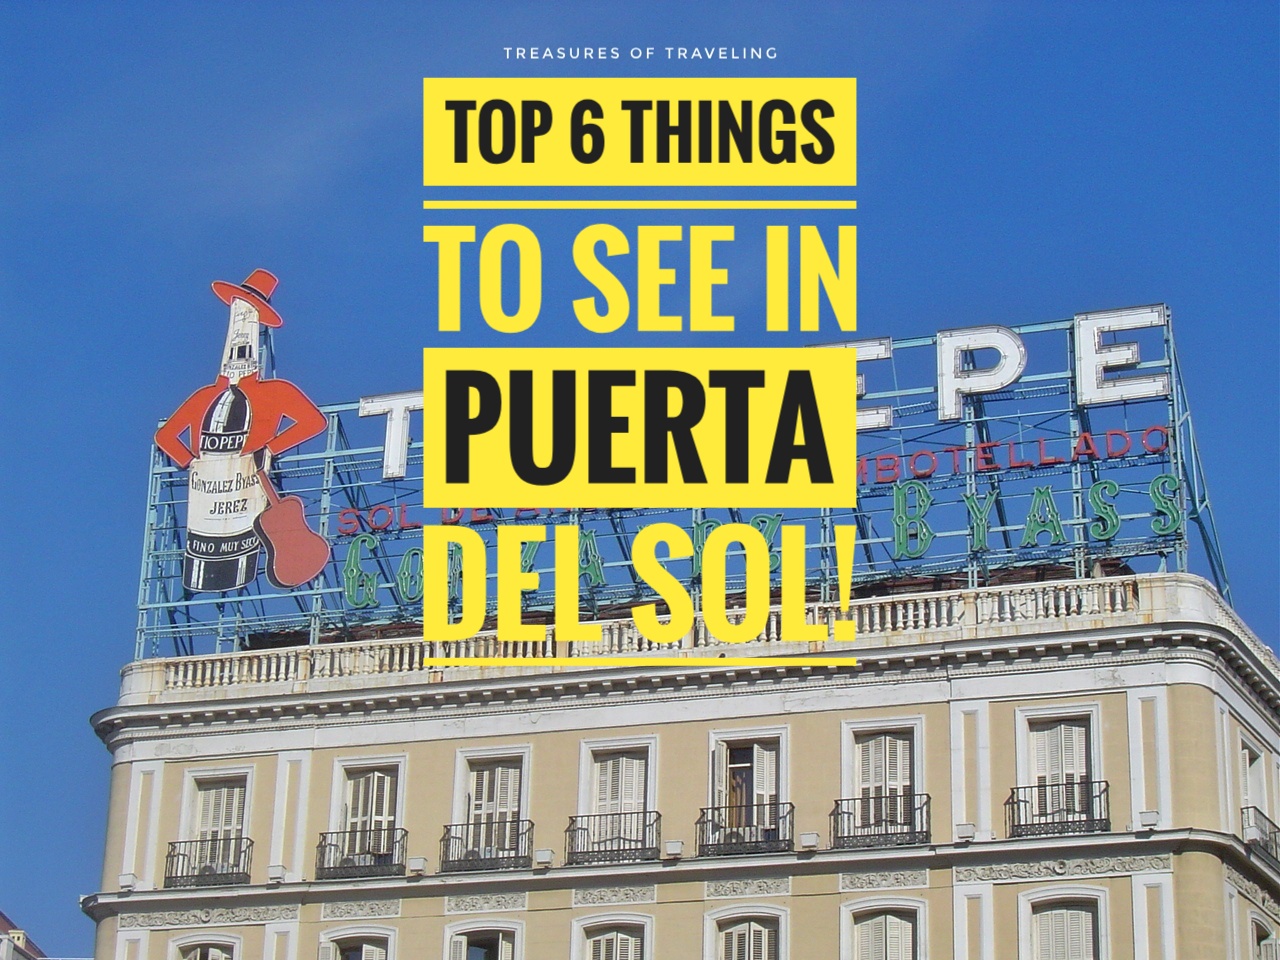 Top 6 Things to See in Puerta del Sol!